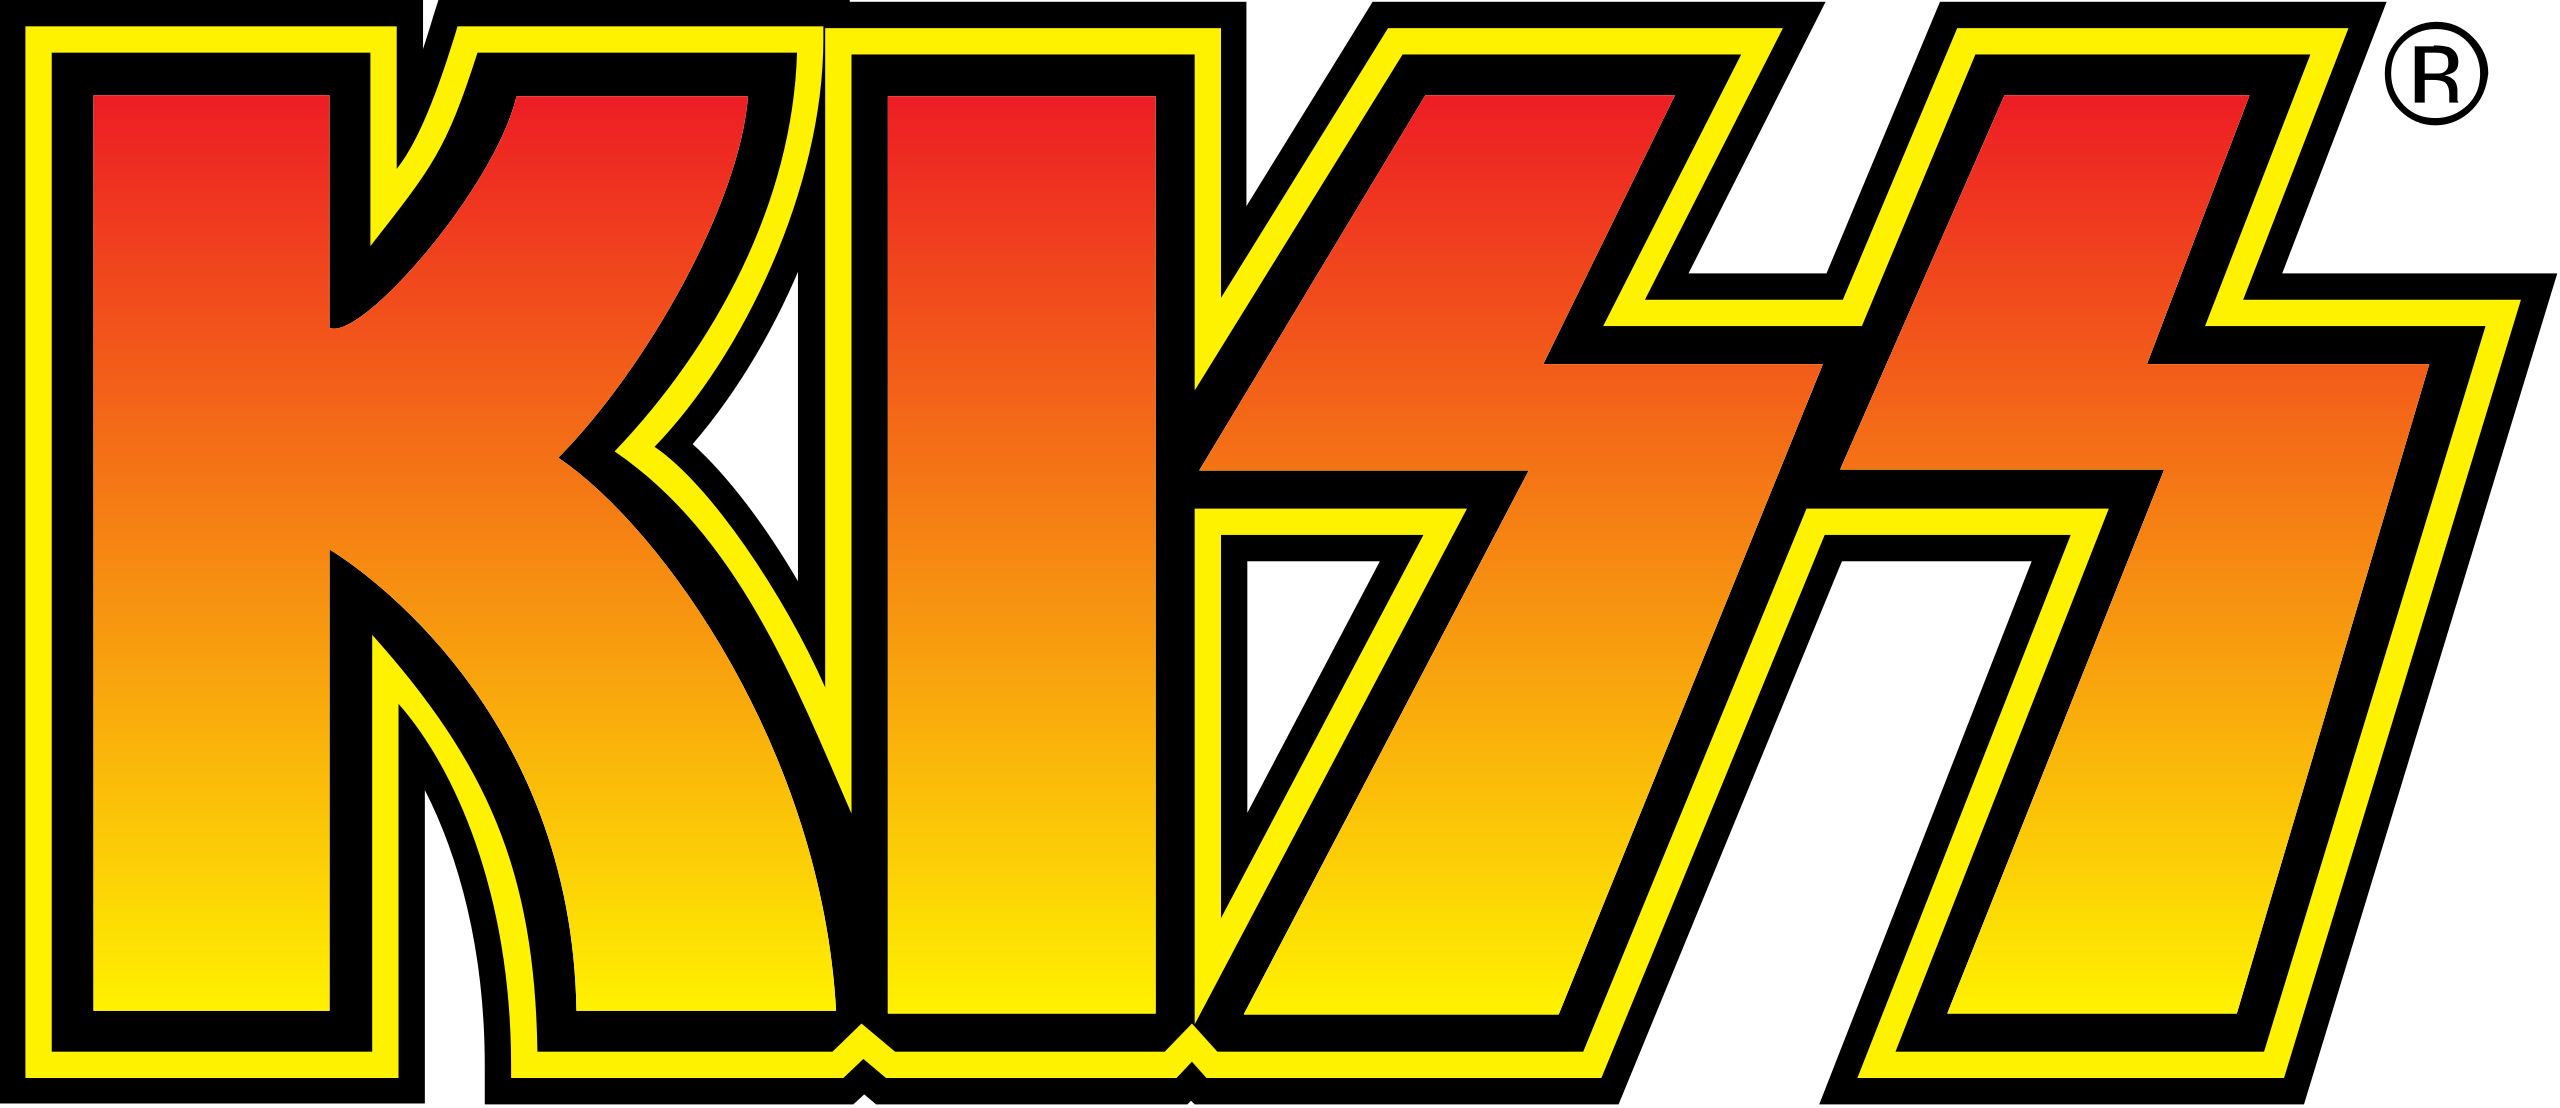 Kiss (band) - Wikipedia